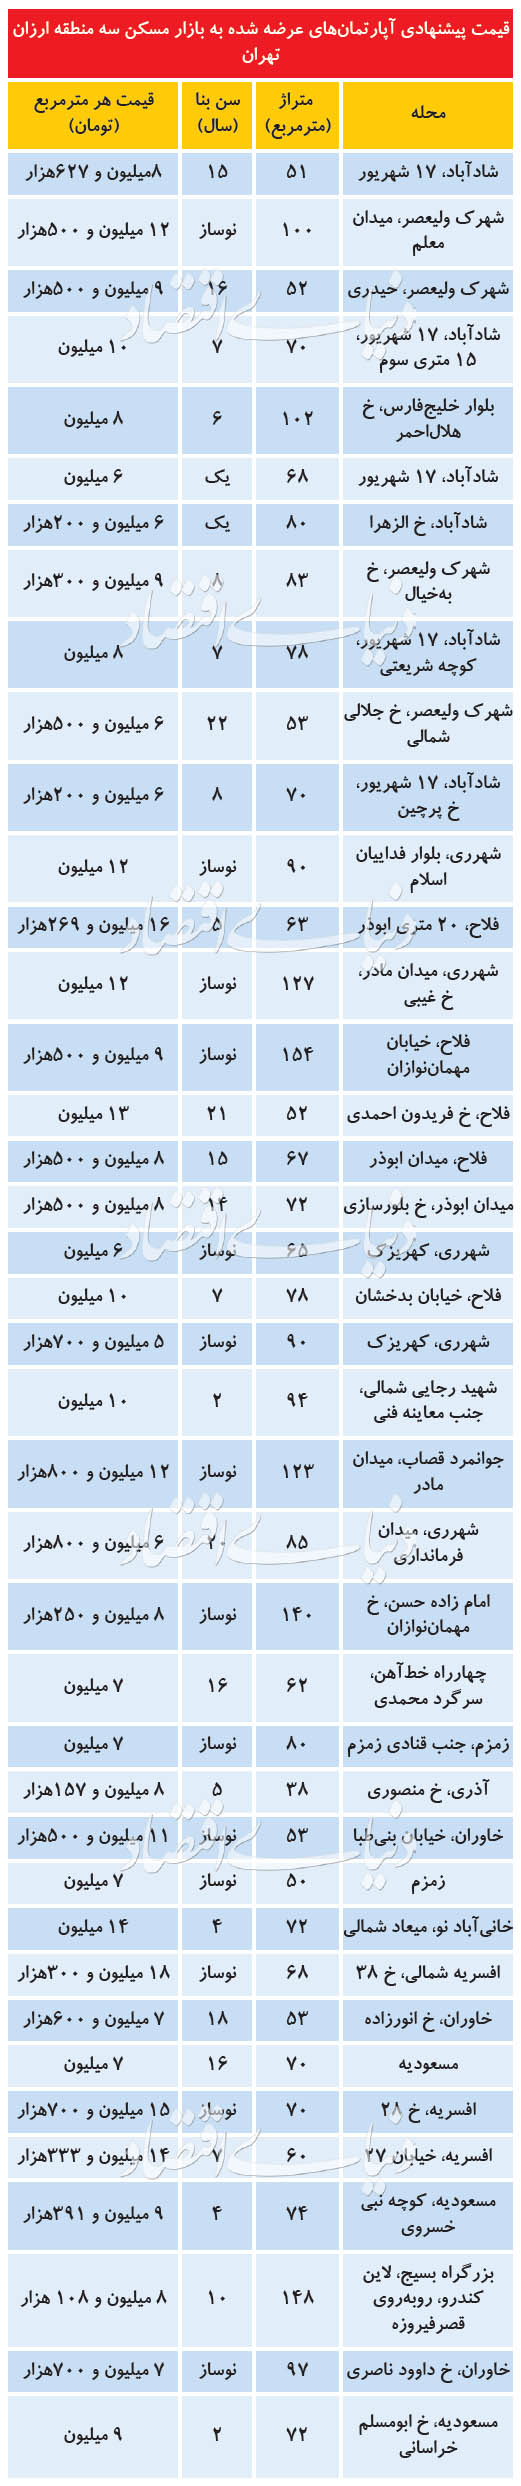 قیمت خرید خانه و نرخ اجاره مسکن در تهران امروز دوشنبه 30 تیر ۹۹